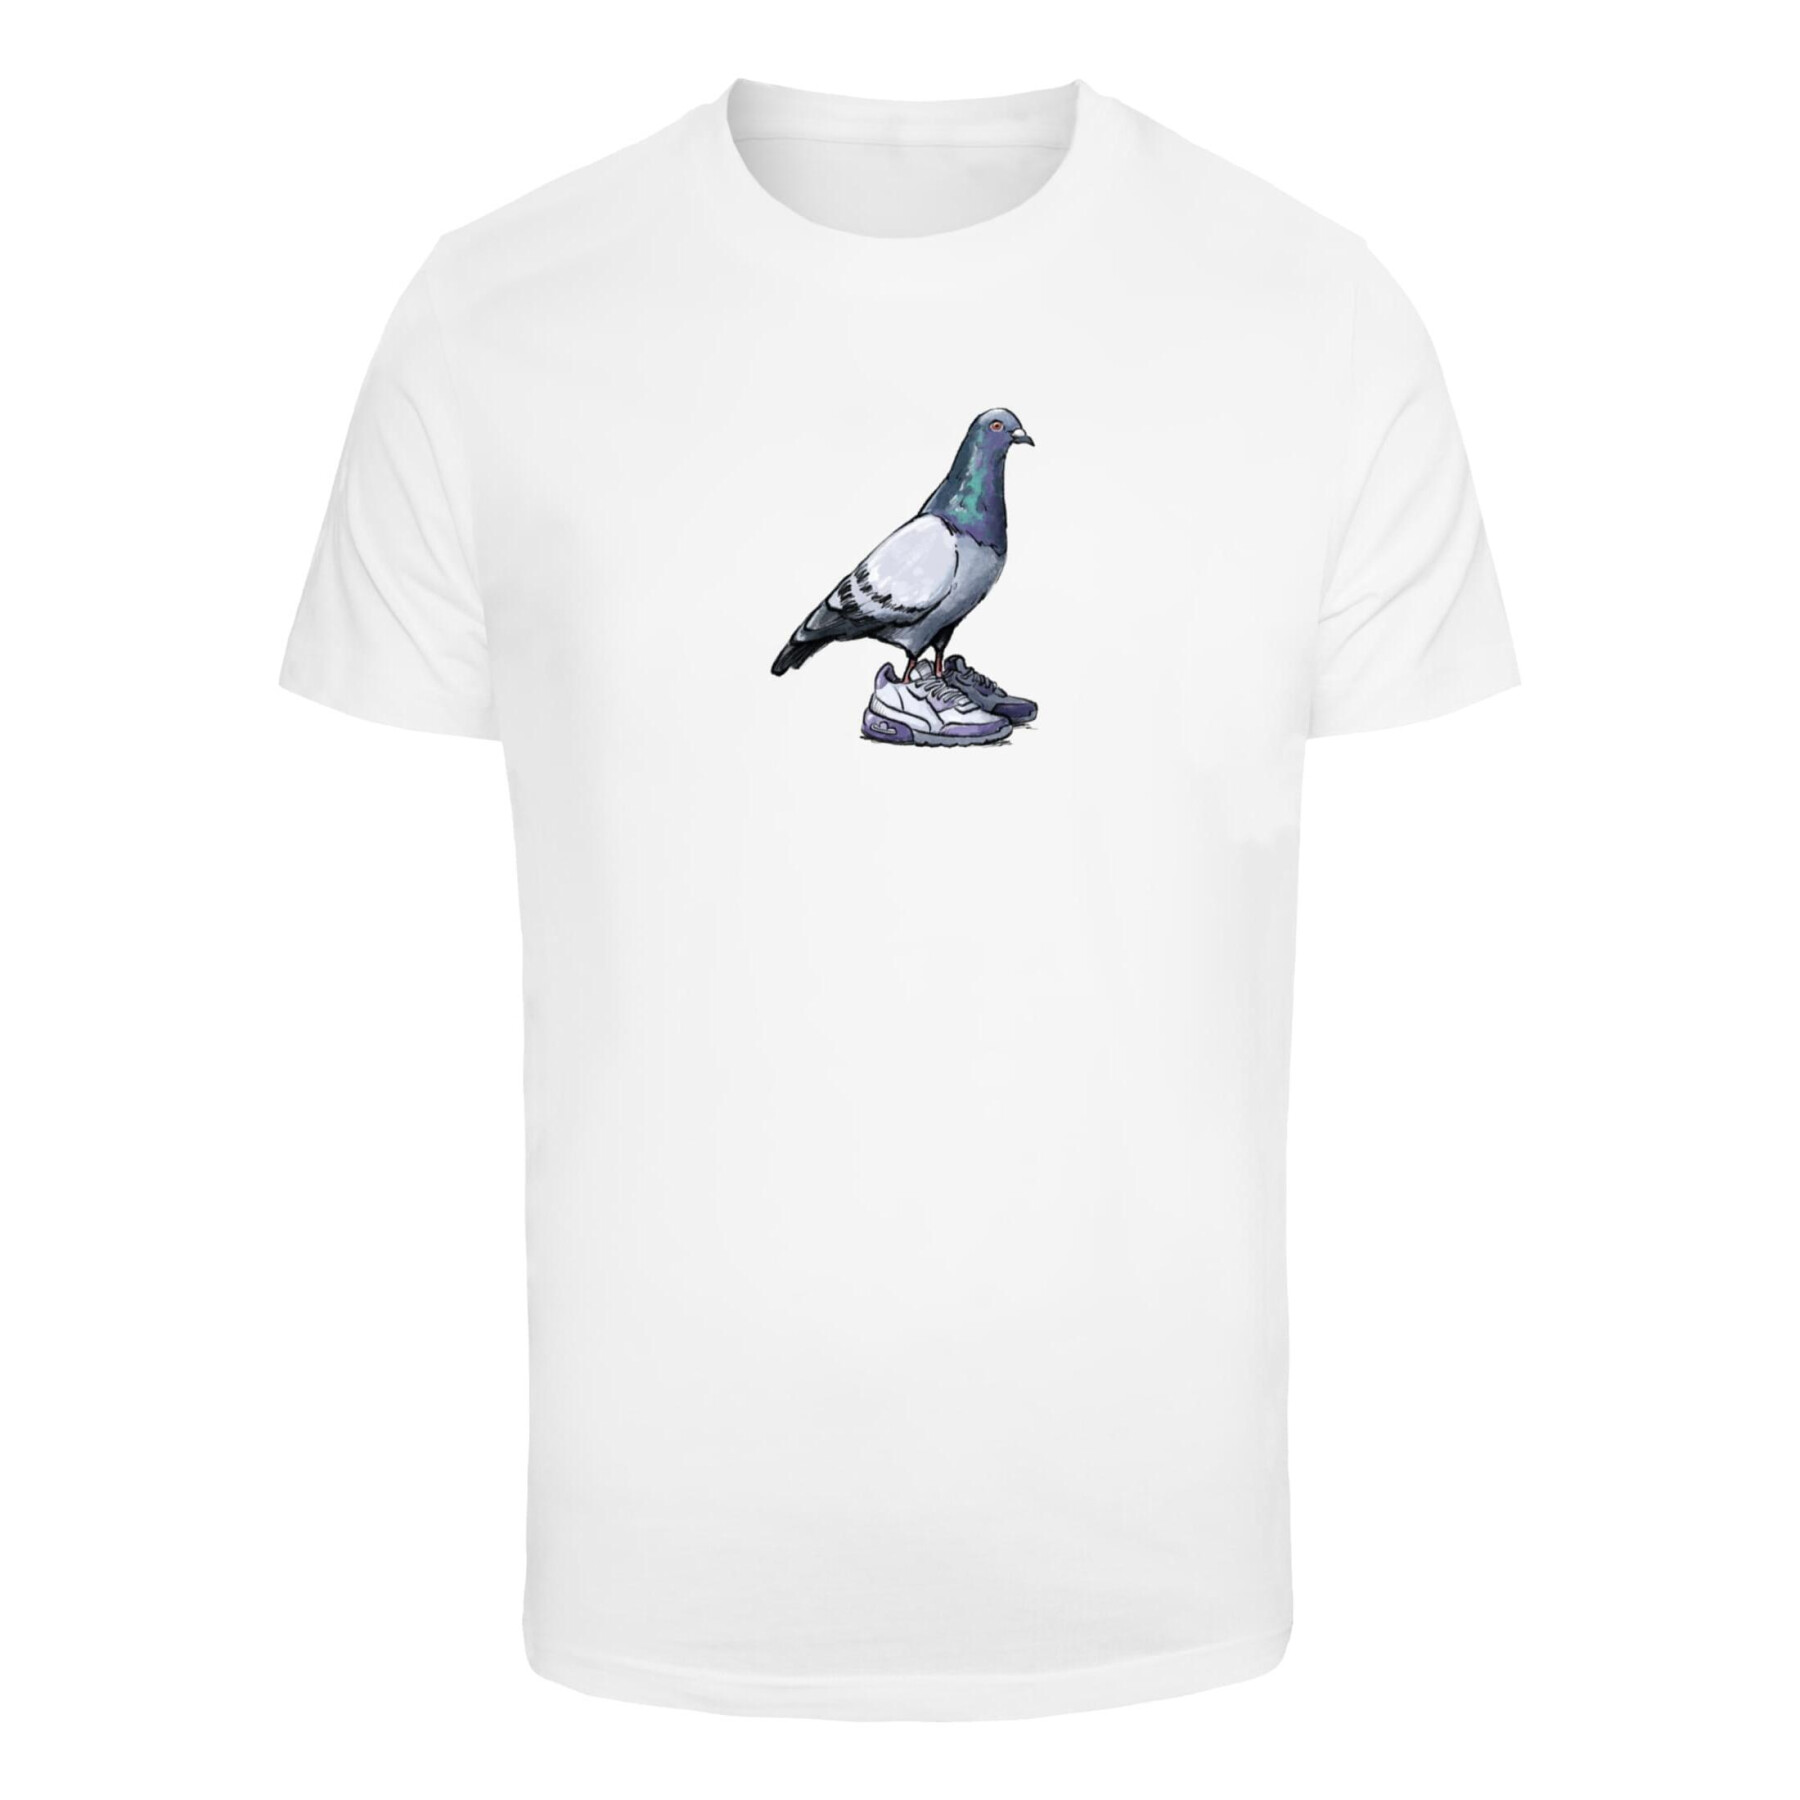 T-shirt Mister Tee Dove Sneaker